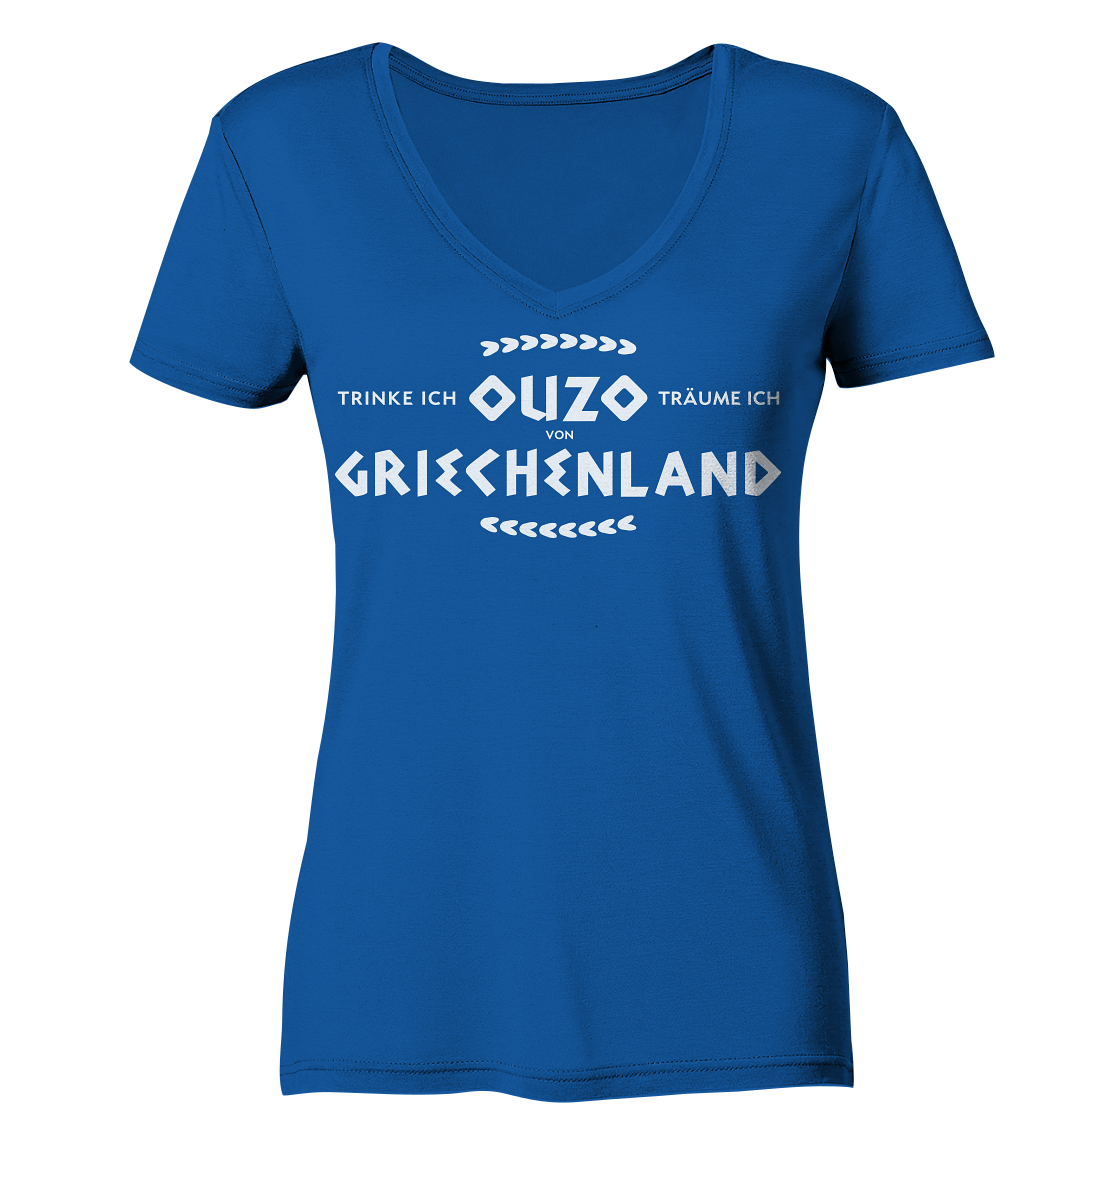 Trinke ich Ouzo träume ich von Griechenland - Ladies Organic V-Neck Shirt